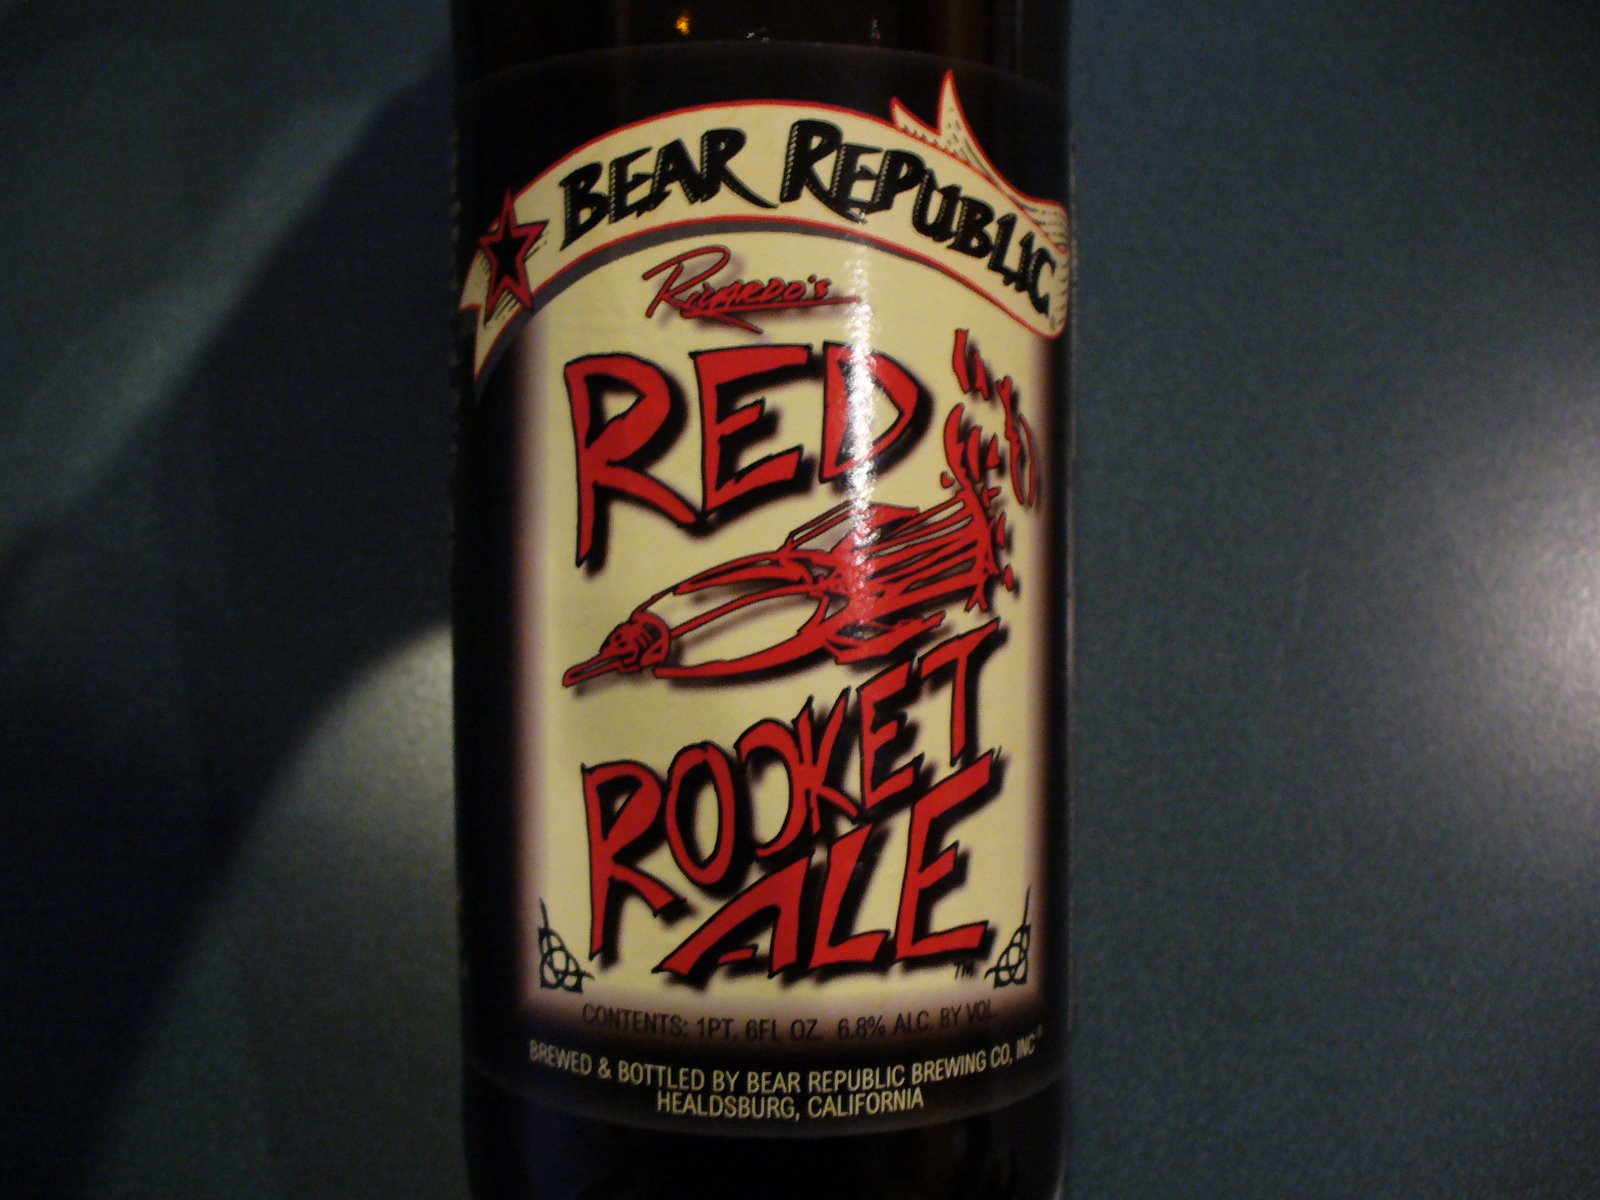 [red+rocket+ale]